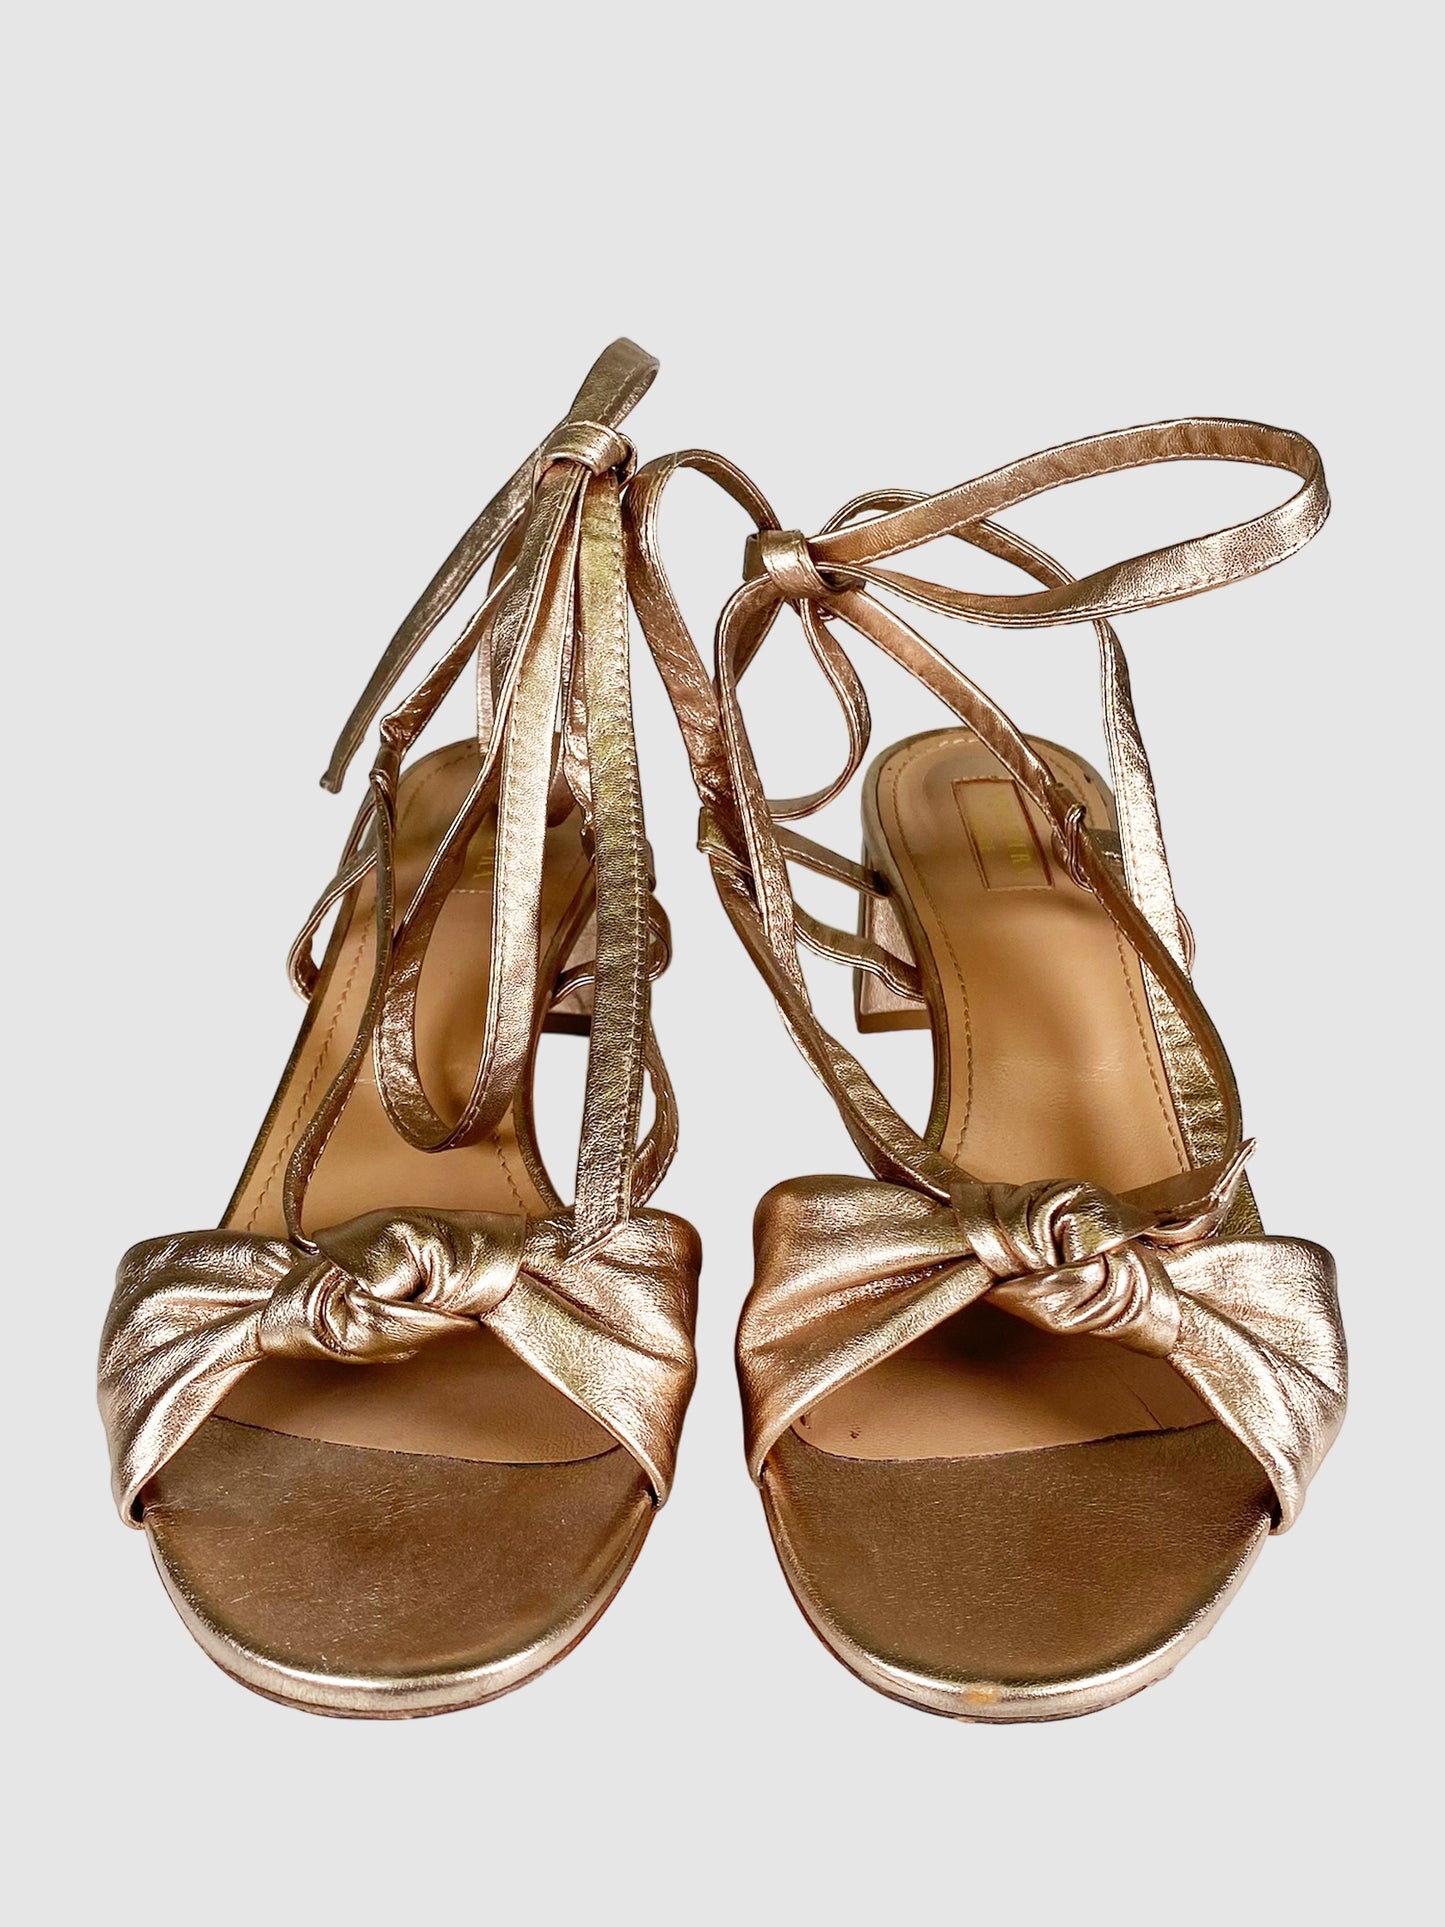 Metallic Strappy Tie Sandals - Size 41